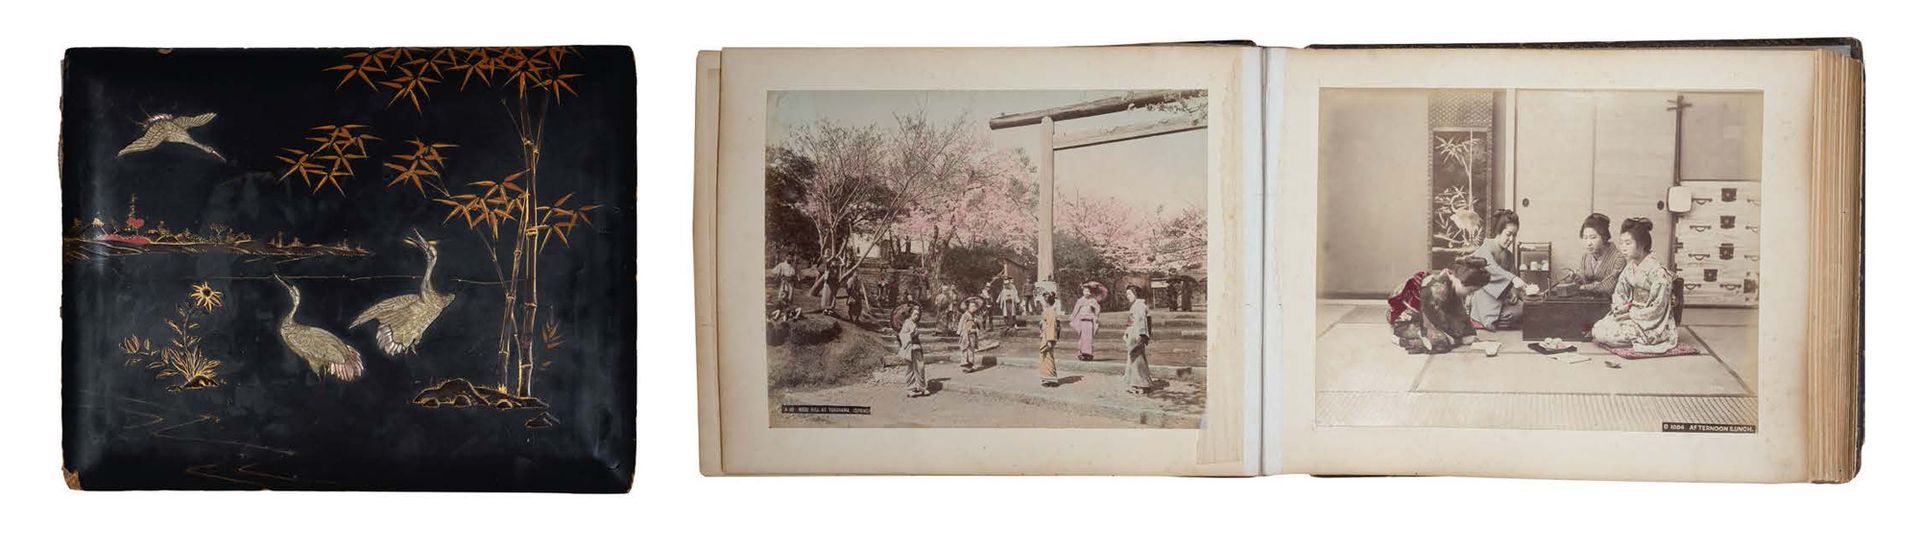 JAPON PÉRIODE MEIJI, VERS 1880 相册共25张，包含50张大型彩色照片，有标题，贴满了，表现了日本的各种景色、风俗场景、小行业和人物&hellip;